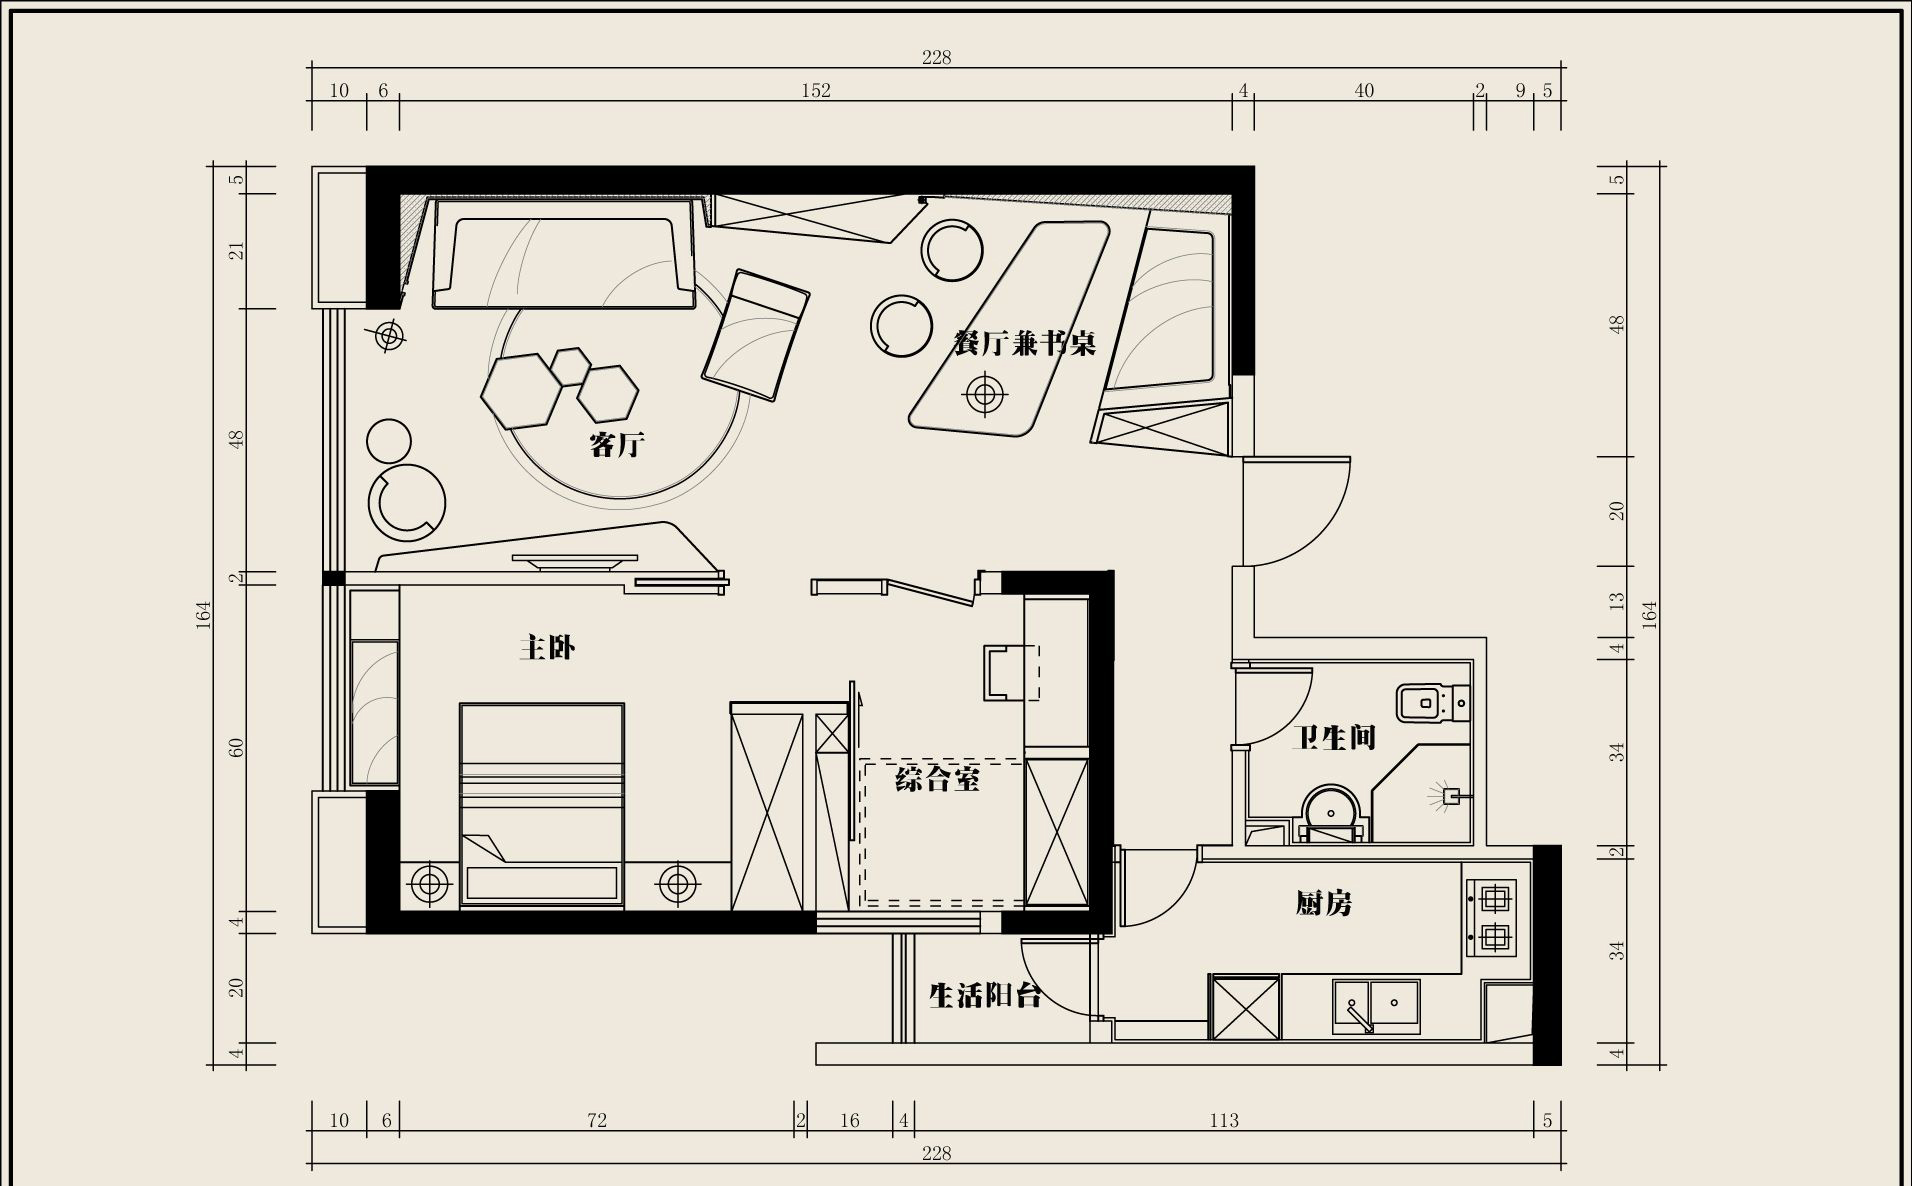 大家好,今天给大家推荐分享一篇关于单身公寓的设计案例,供大家参考